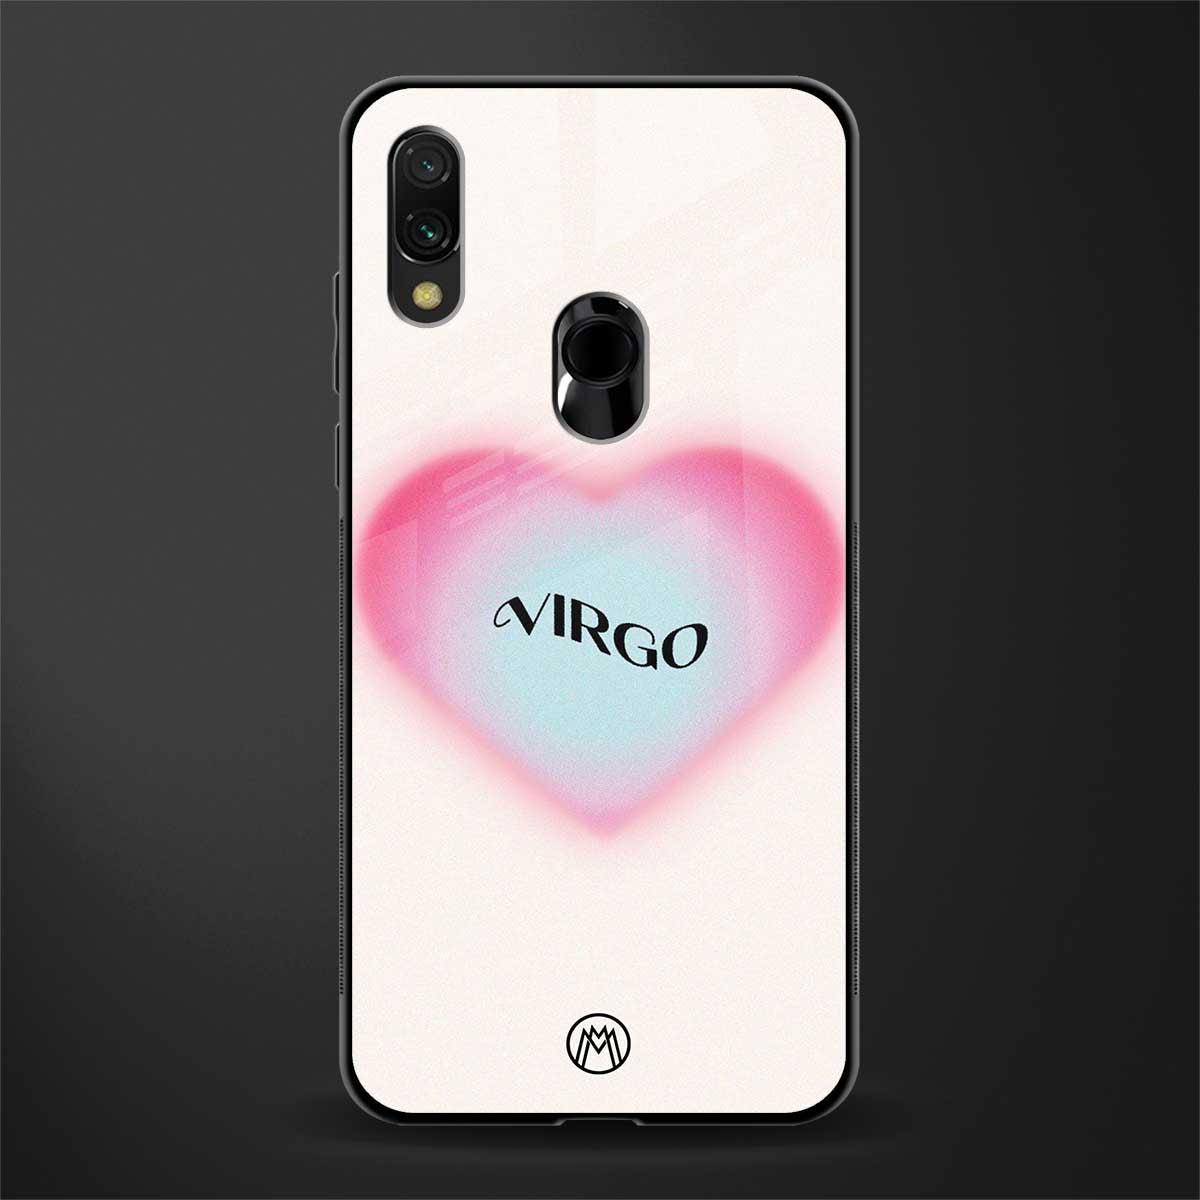 virgo minimalistic glass case for redmi note 7 pro image